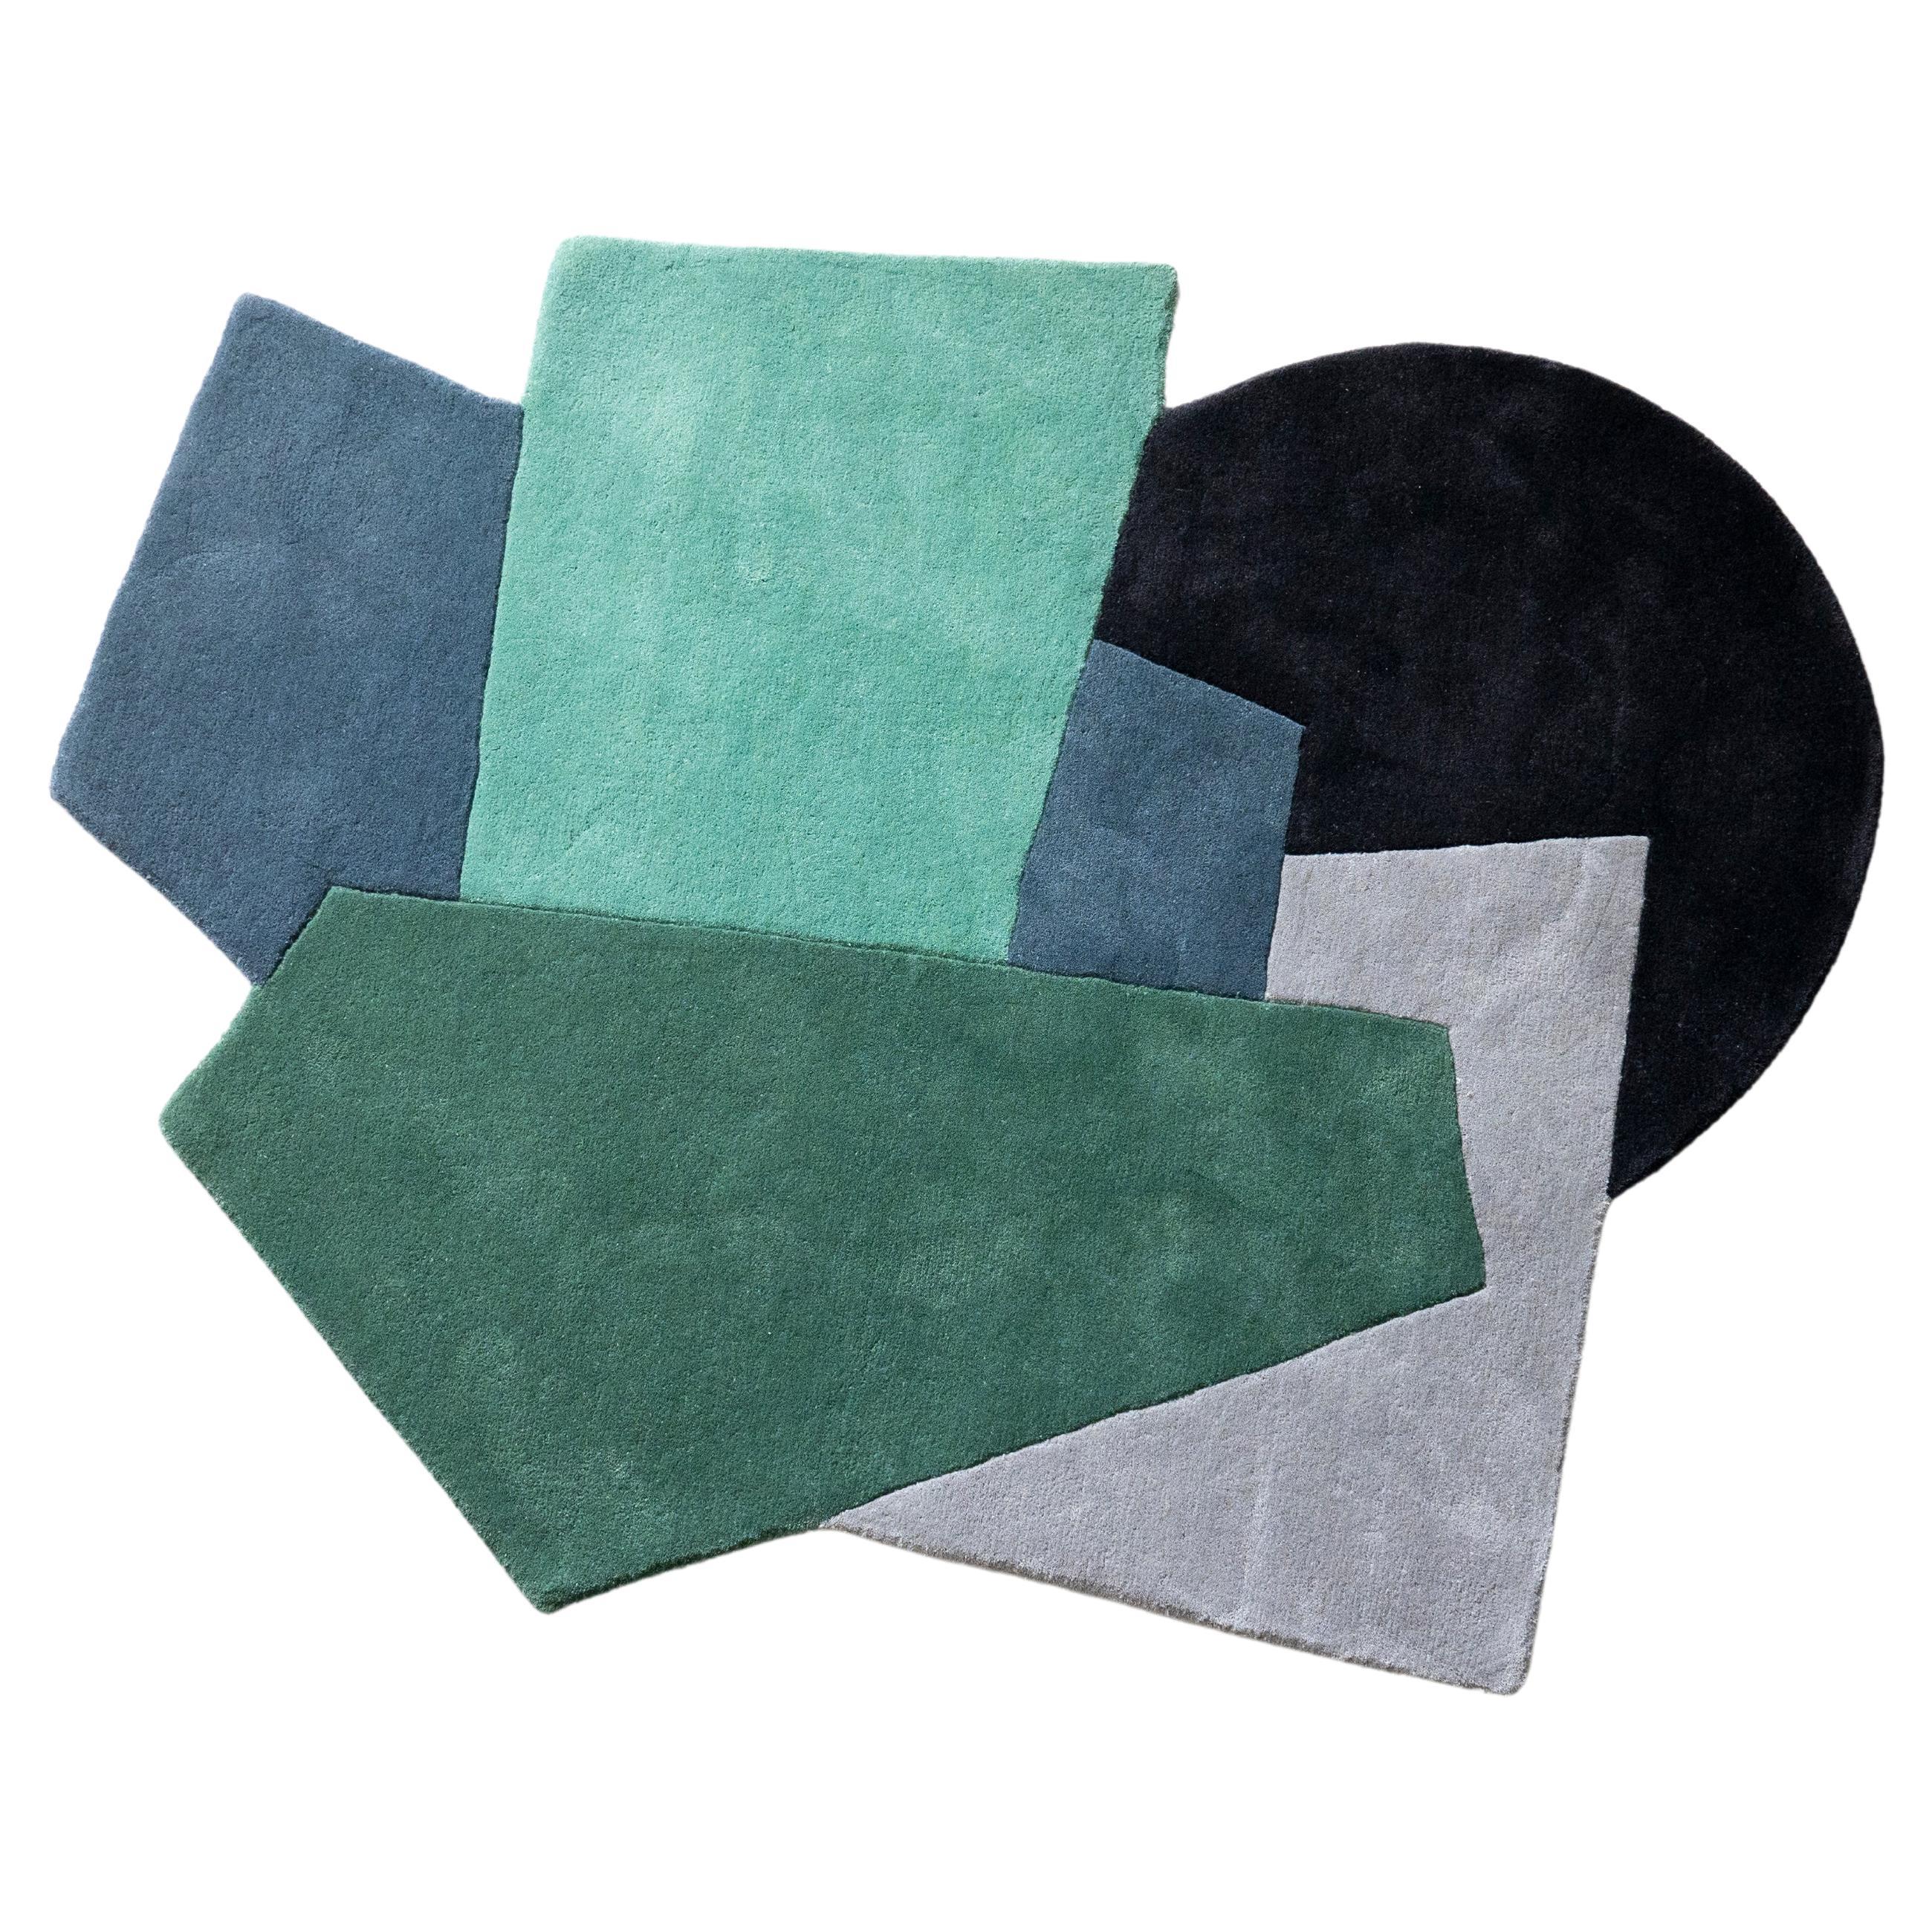 Dekorativer minimalistischer Teppich des 21. Jahrhunderts, handgetuftete Wolle, grün